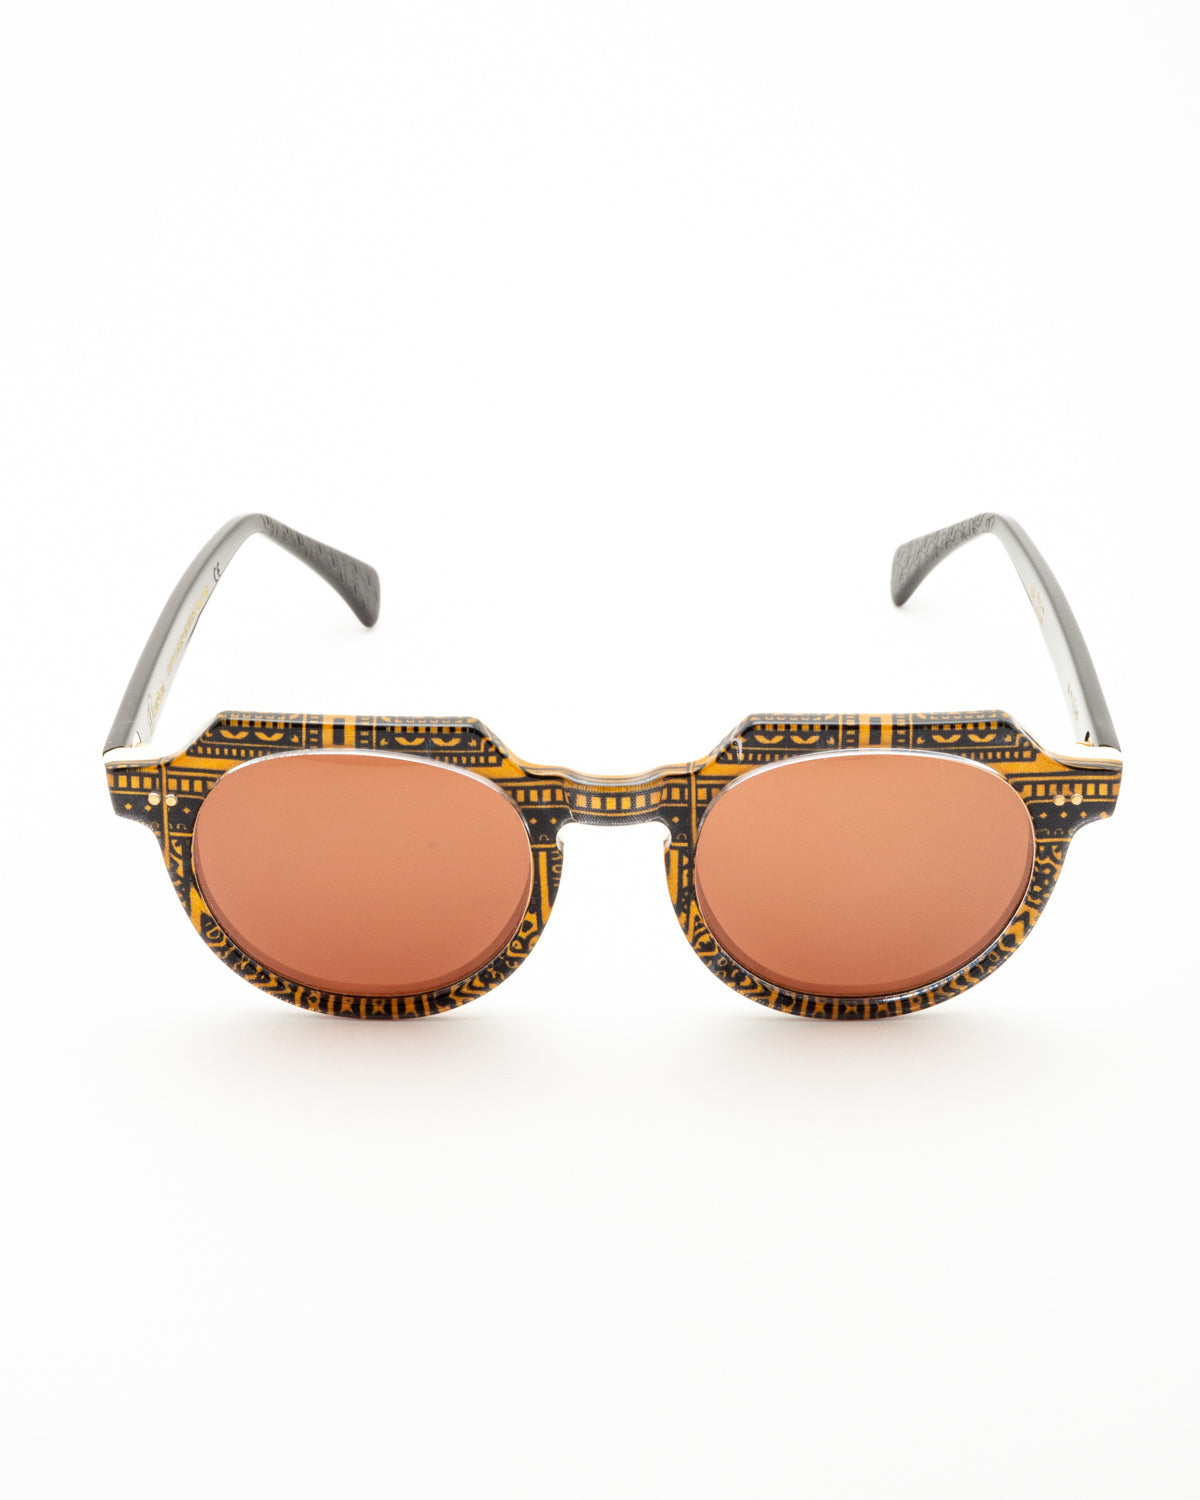 Farben F3 - 001 sunglasses